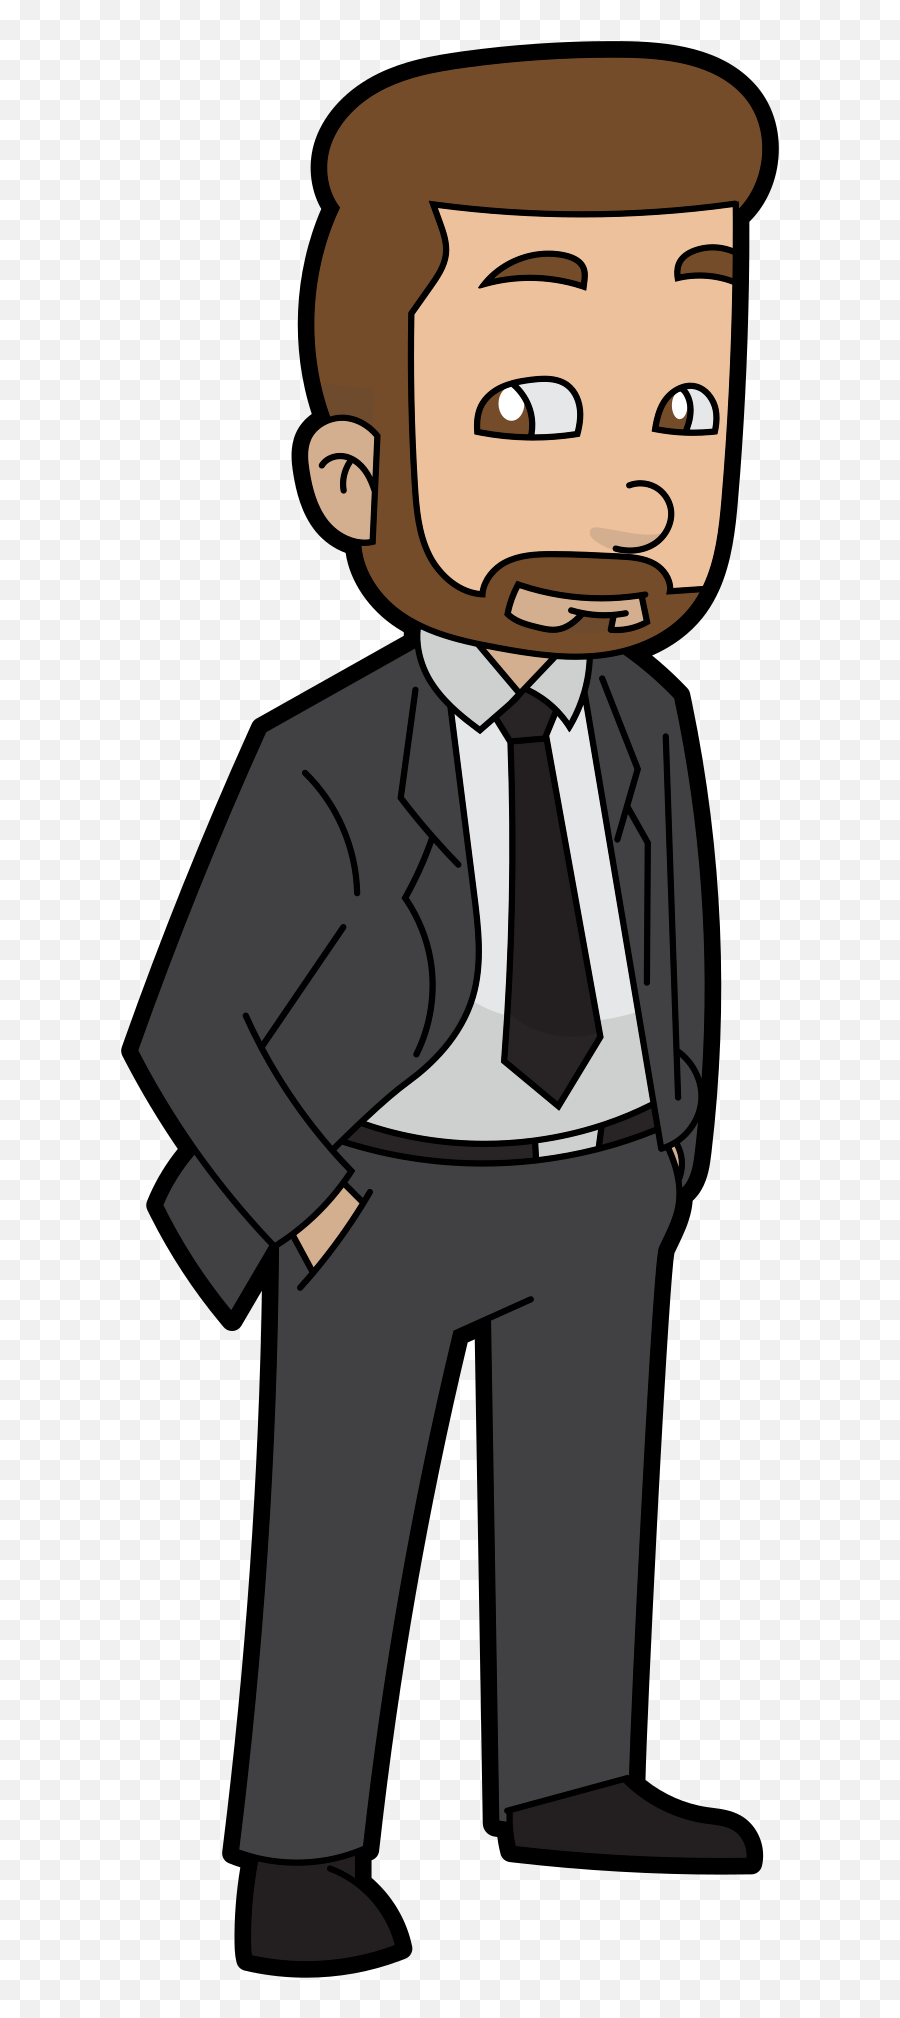 A Cartoon Businessman With Beard - Cartoon Images Png Man,Business Man Png